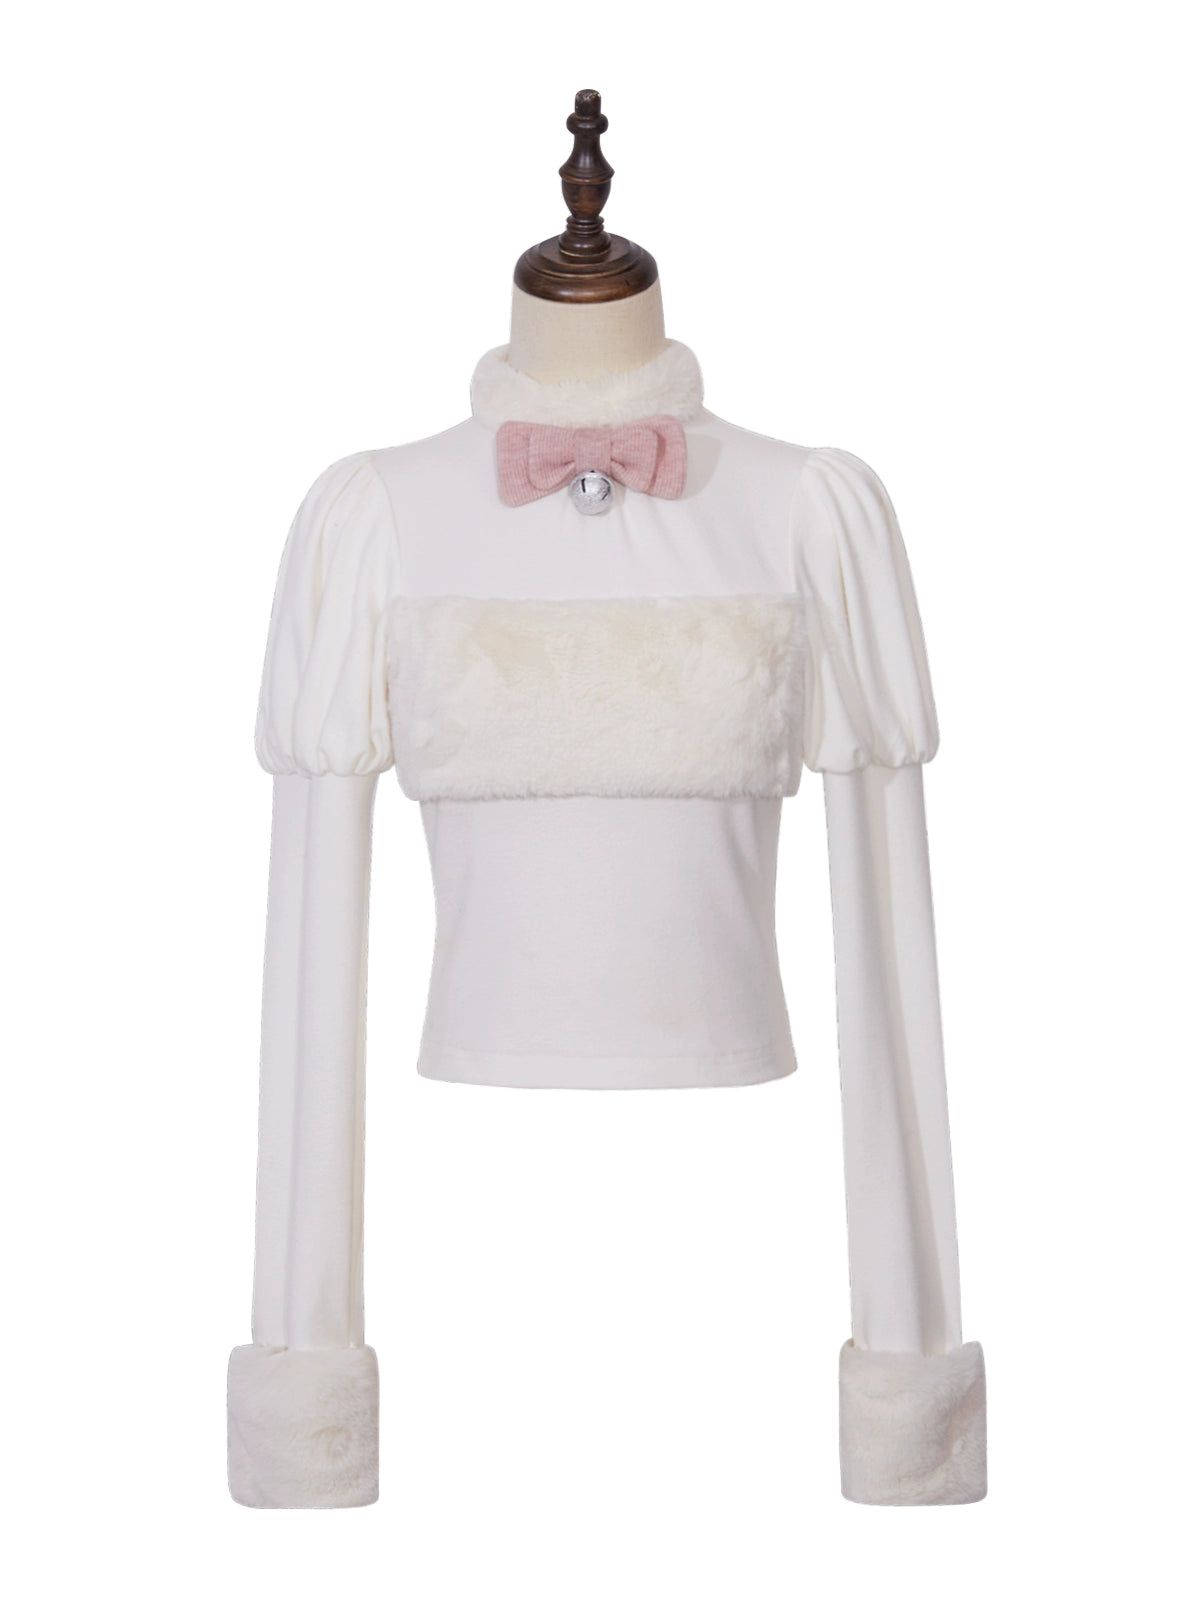 (BFM)Tan Tuan~Wish Cat~Sweet Lolita Shirt Fur Collar Knitted Blouse white innerwear (regular style) S 